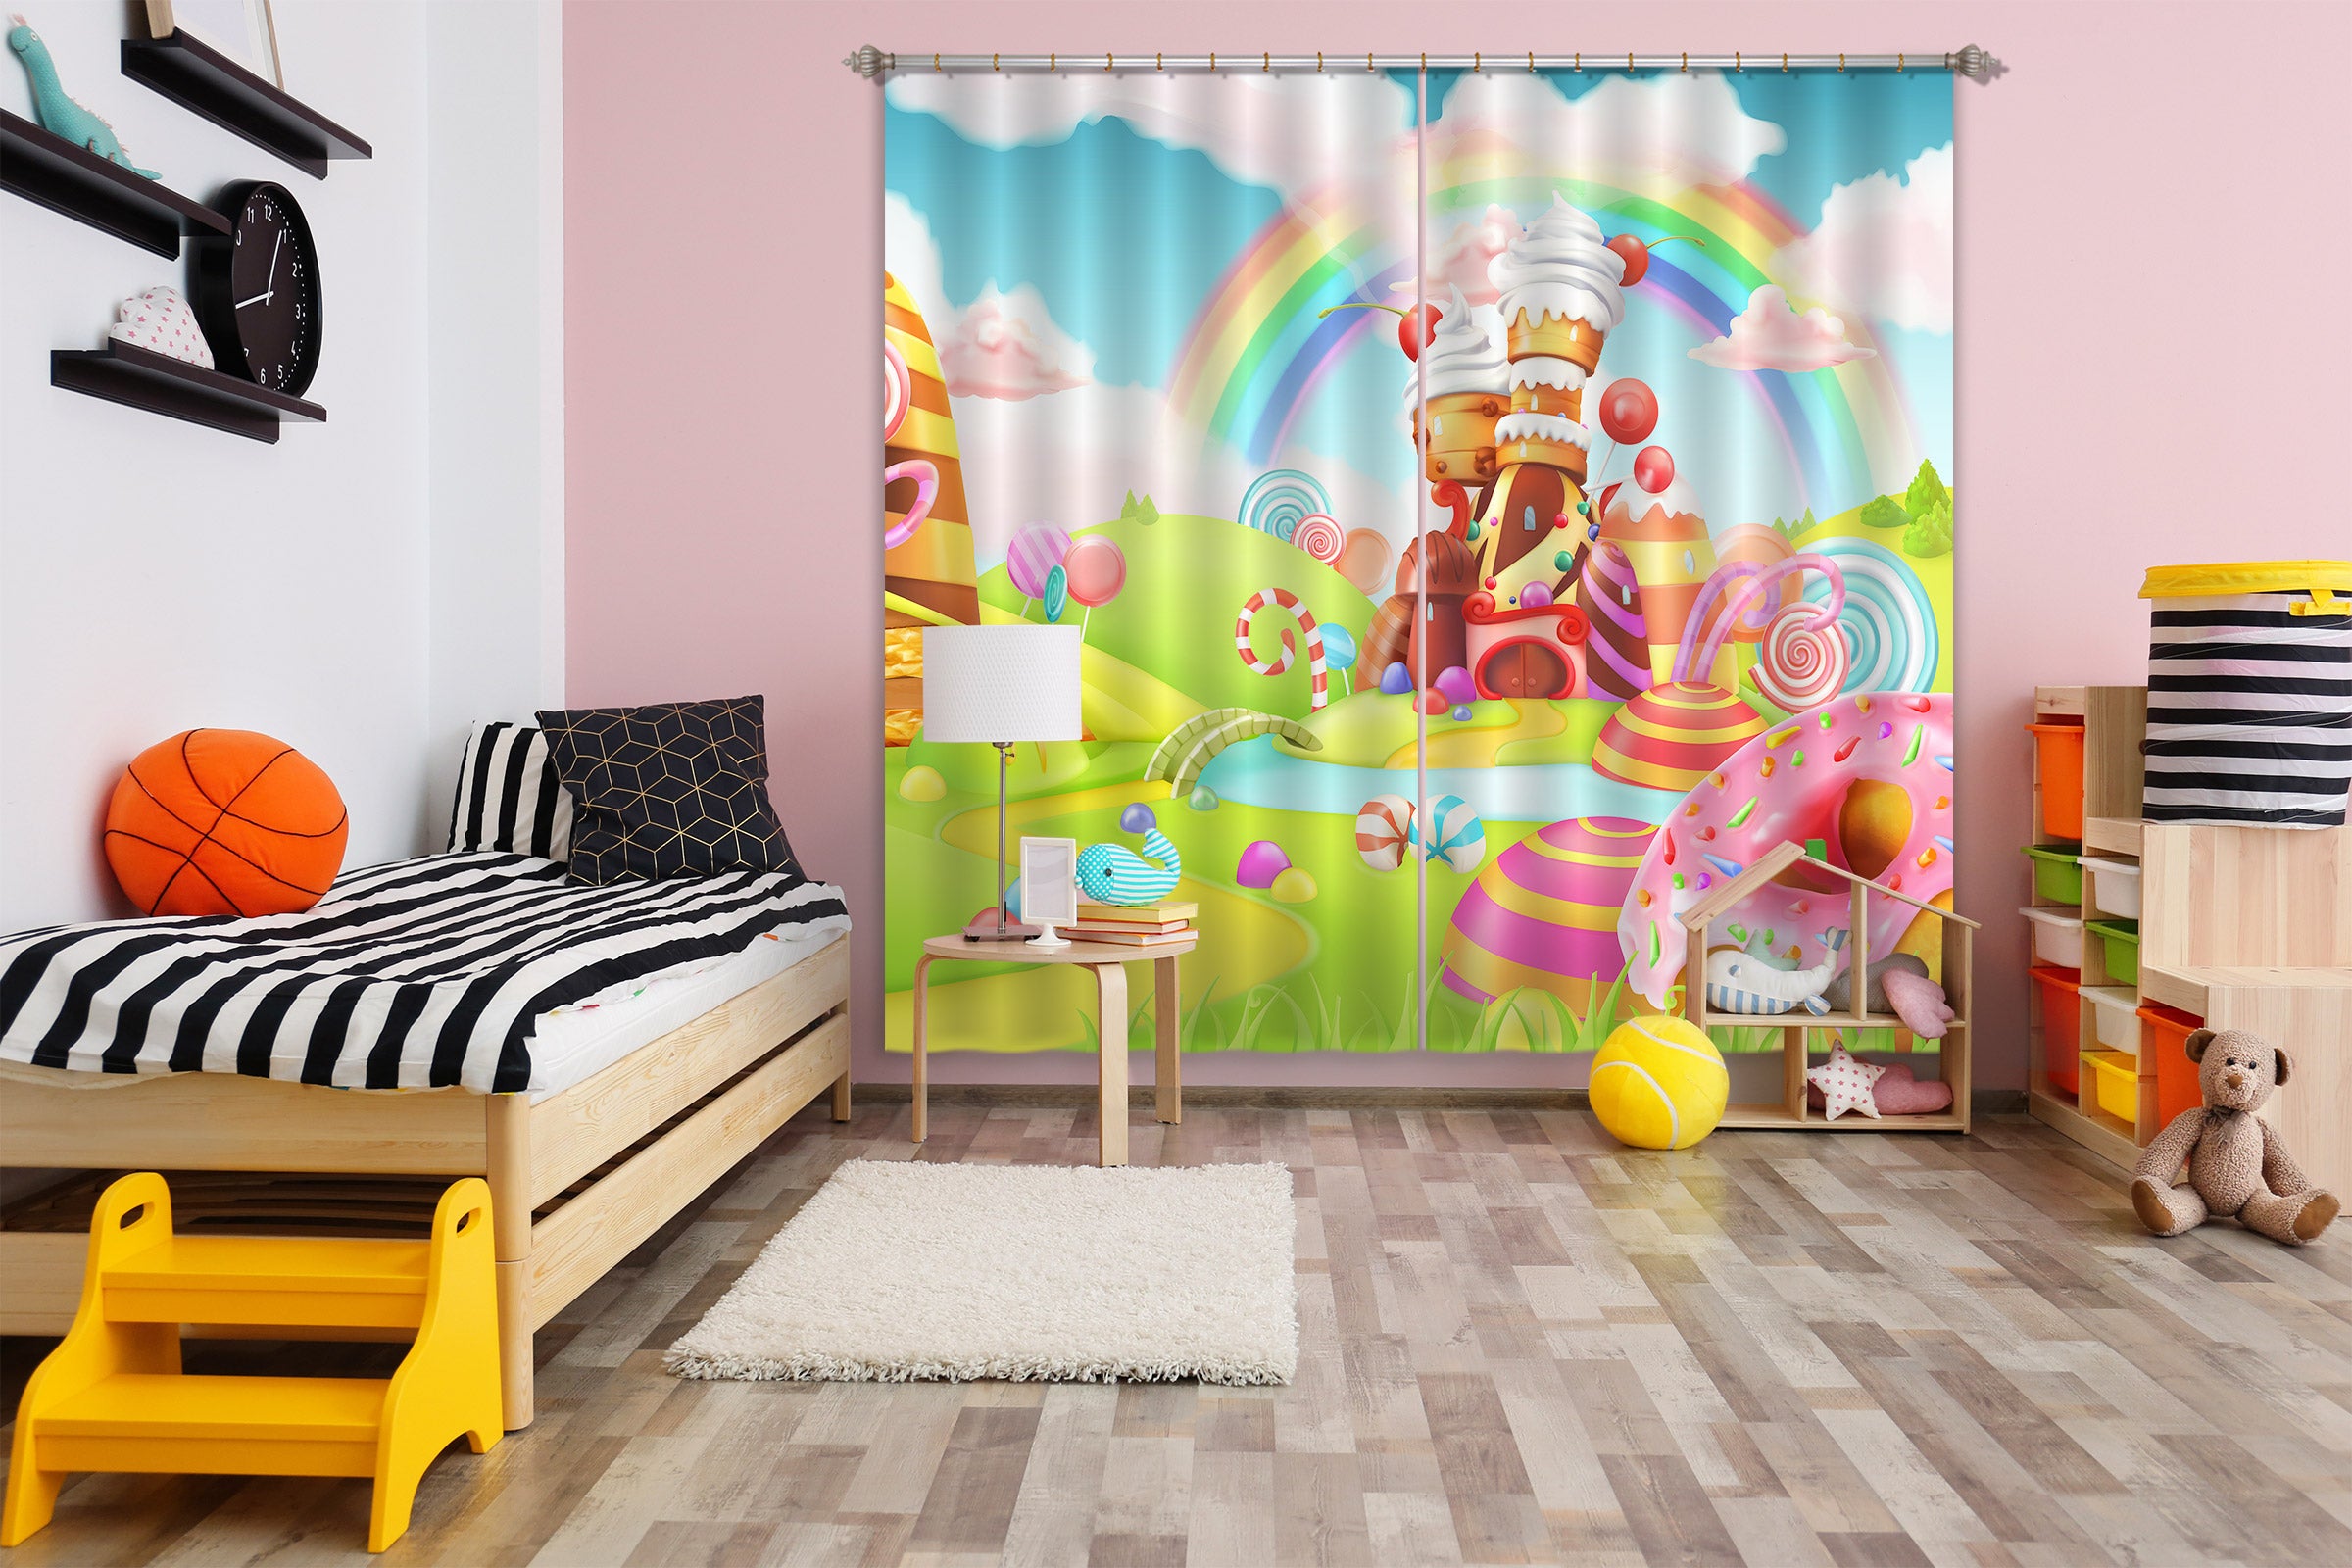 3D Rainbow Candy House 044 Curtains Drapes